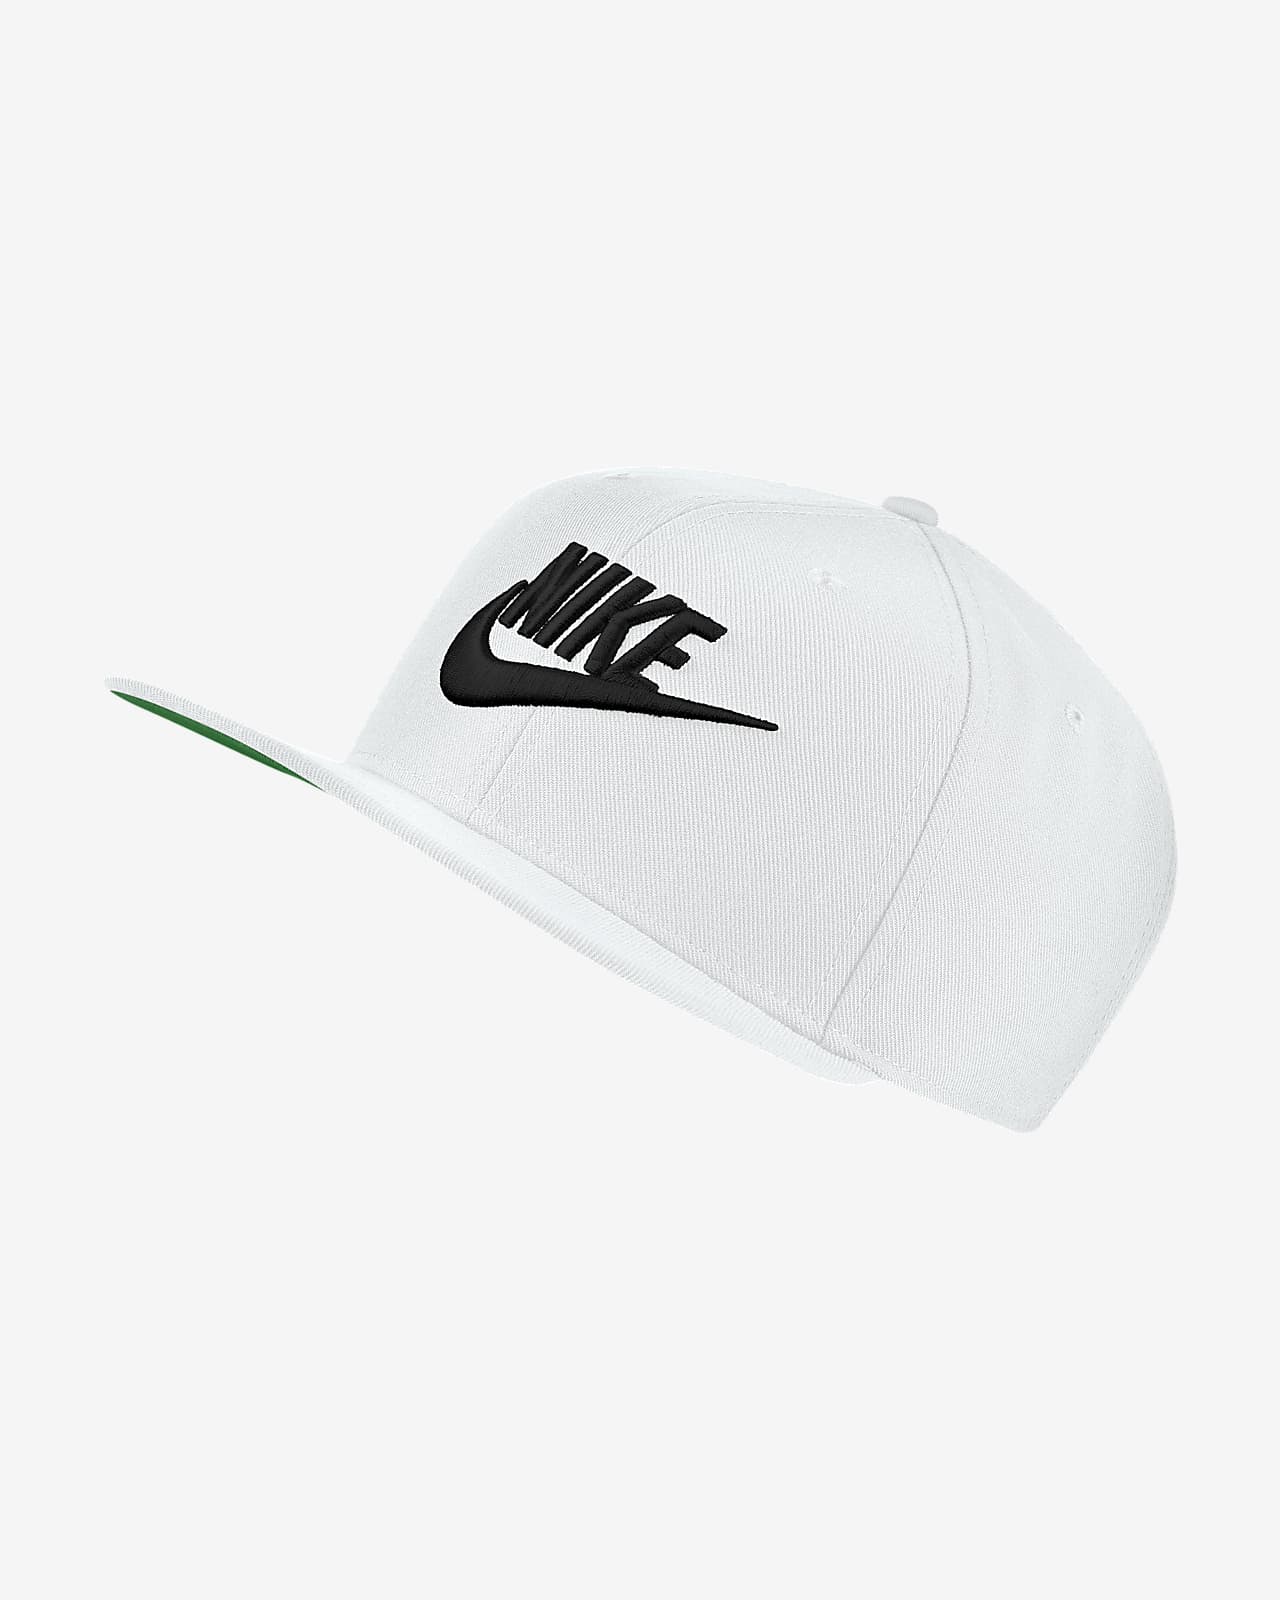 Nike Sportswear Dri-FIT Pro Futura Adjustable Cap. Nike.com